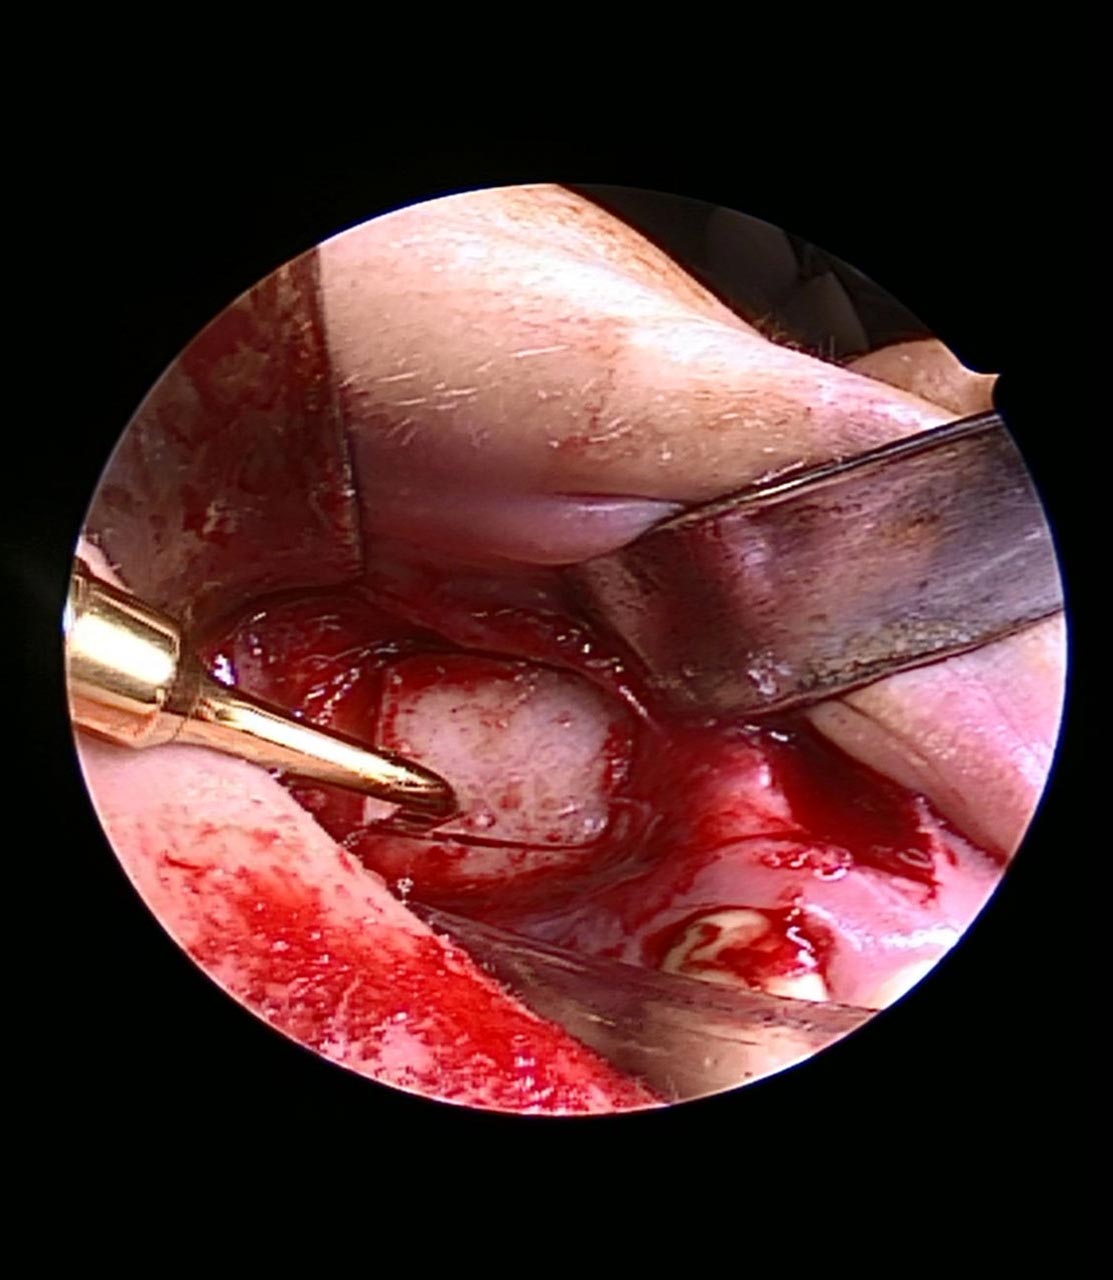 Abb. 3: Das intraoperative Bild zeigt den Zugang zum Sinus maxillaris rechts. Mittels Piezosurgery erfolgt die Bildung eines Knochenfensters modo Abello.